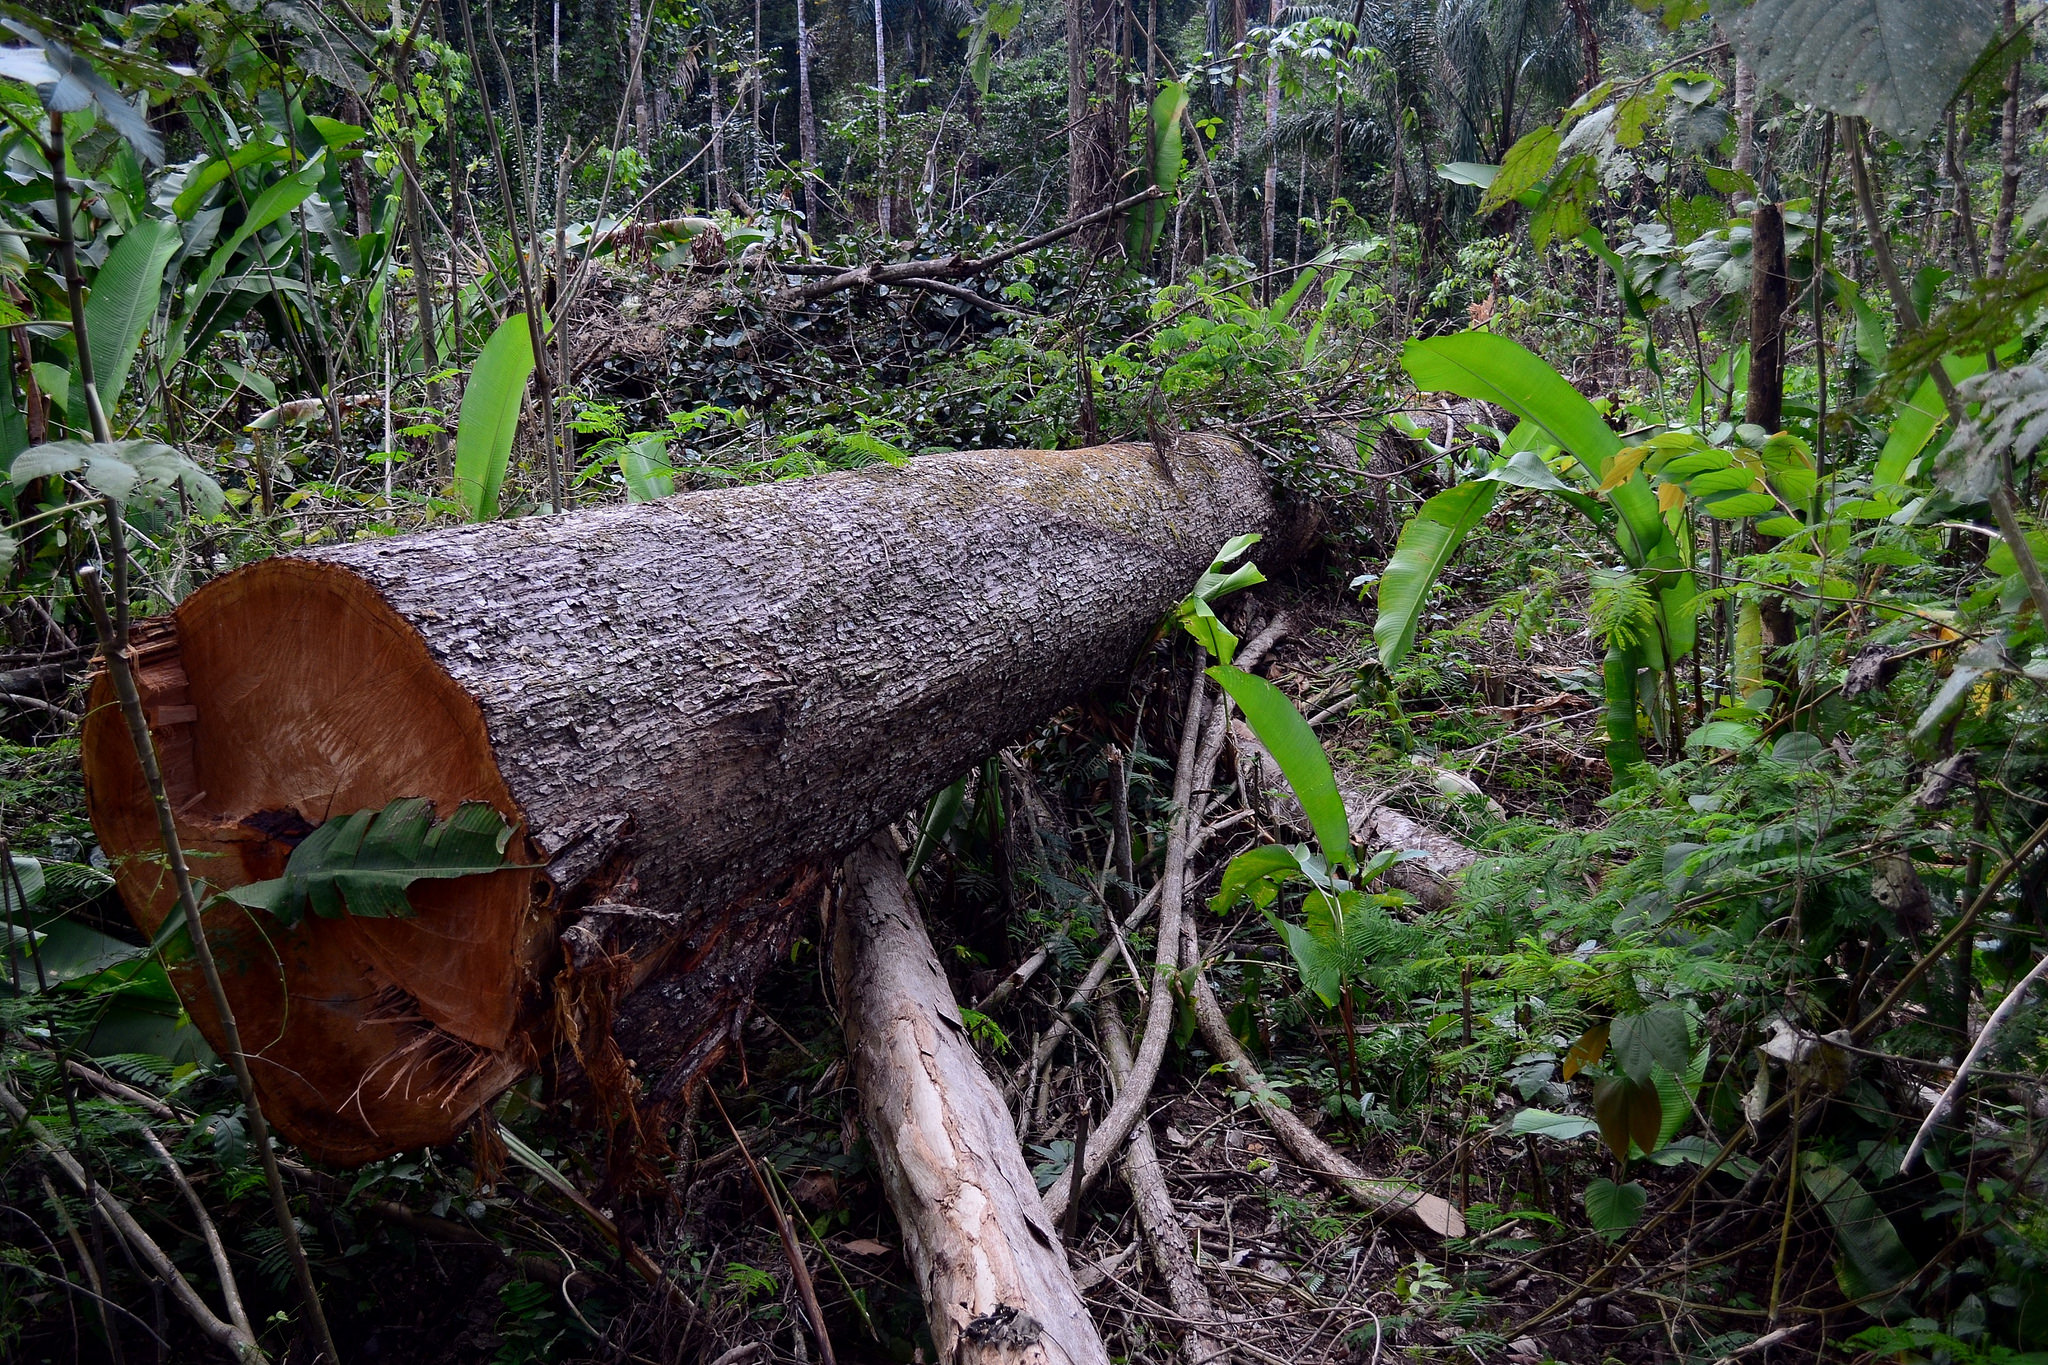 Floresta Nacional do Jamanxim em Novo Progresso, Pará. (Foto: Vinícius Mendonça - Ascom/Ibama/Flickr-CC)